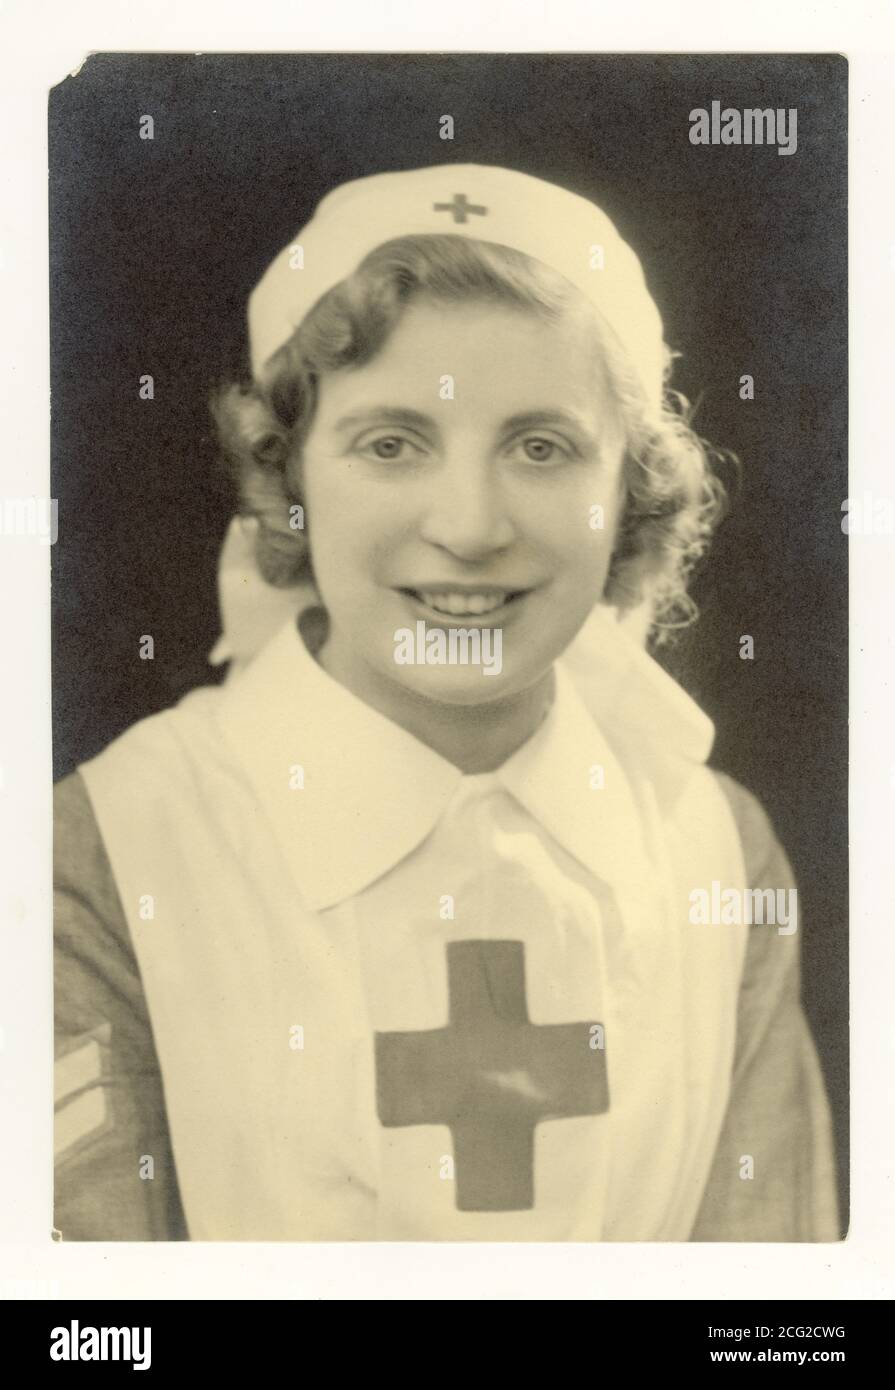 1930's Studio ritratto Fotografia di infermiere croce rossa, con strisce sergente sulla manica, circa 1939, Regno Unito Foto Stock